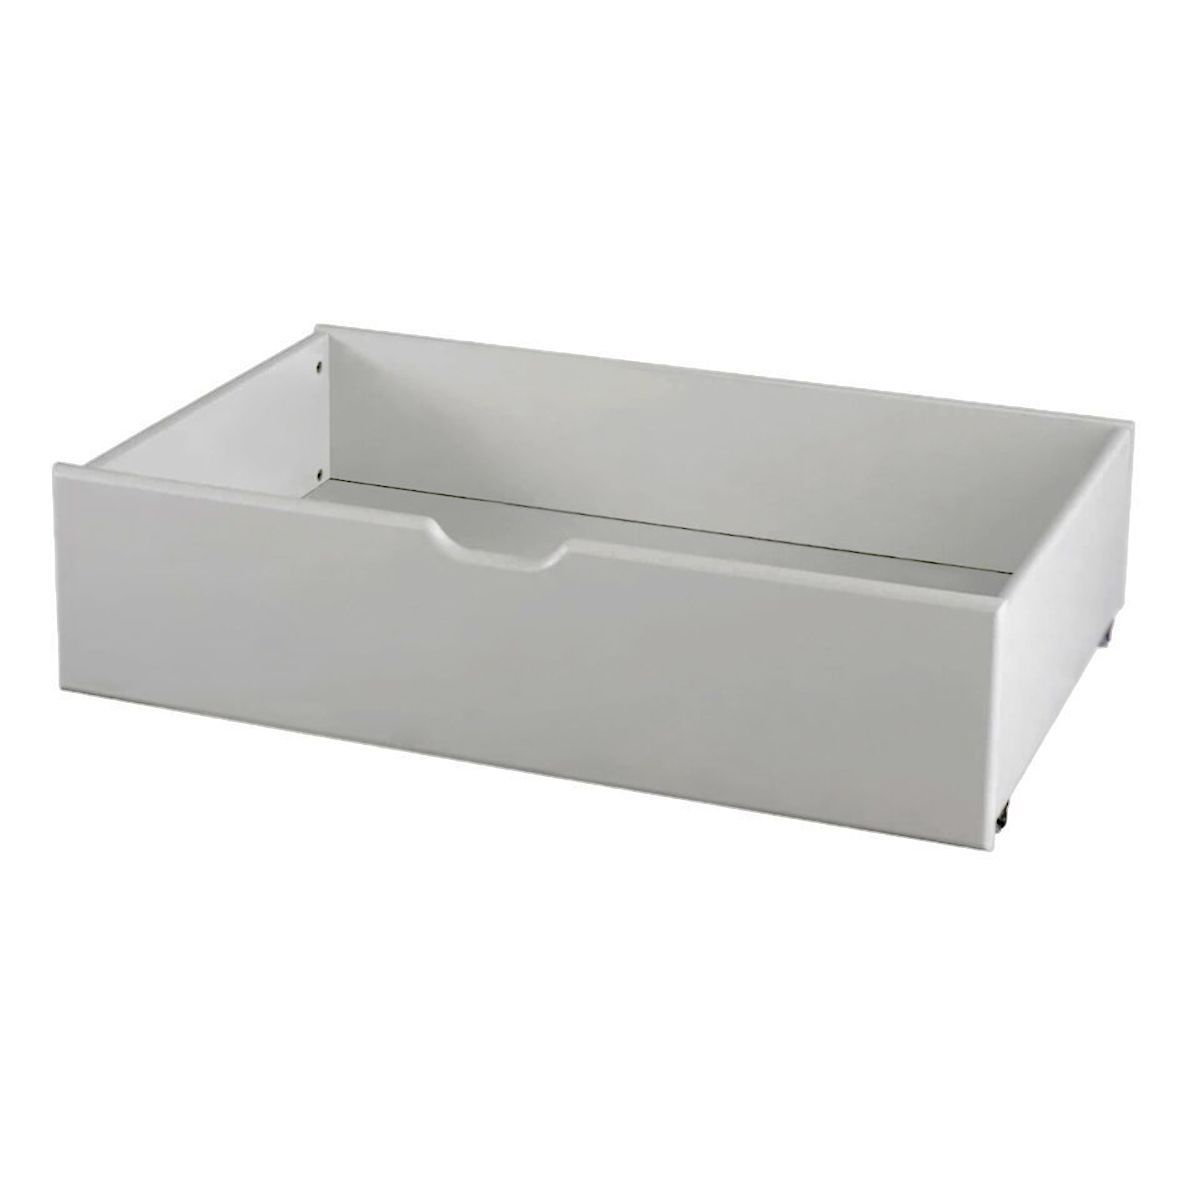 Children's Underbed Storage Drawers - Light Grey (set of 2)